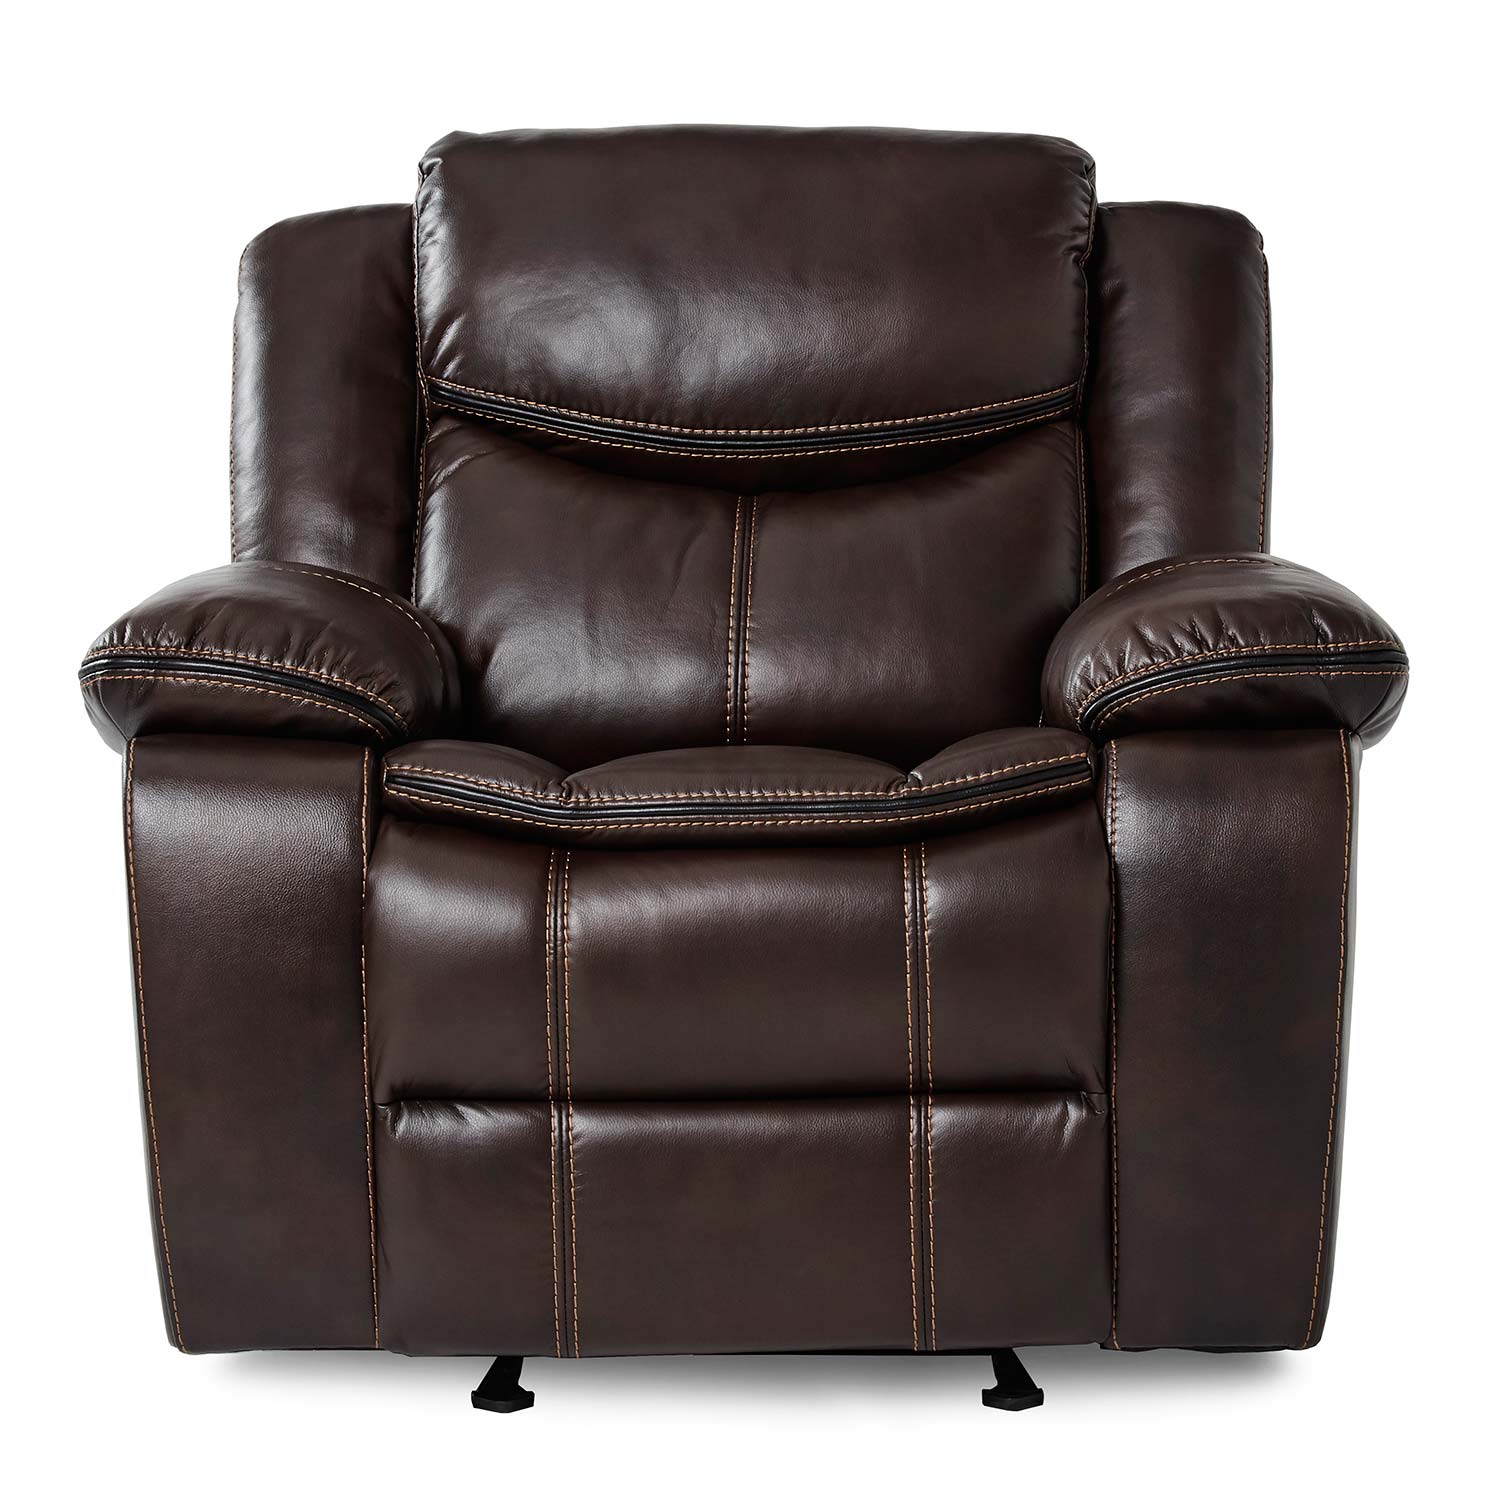 Homelegance Bastrop Glider Reclining Chair - Dark Brown